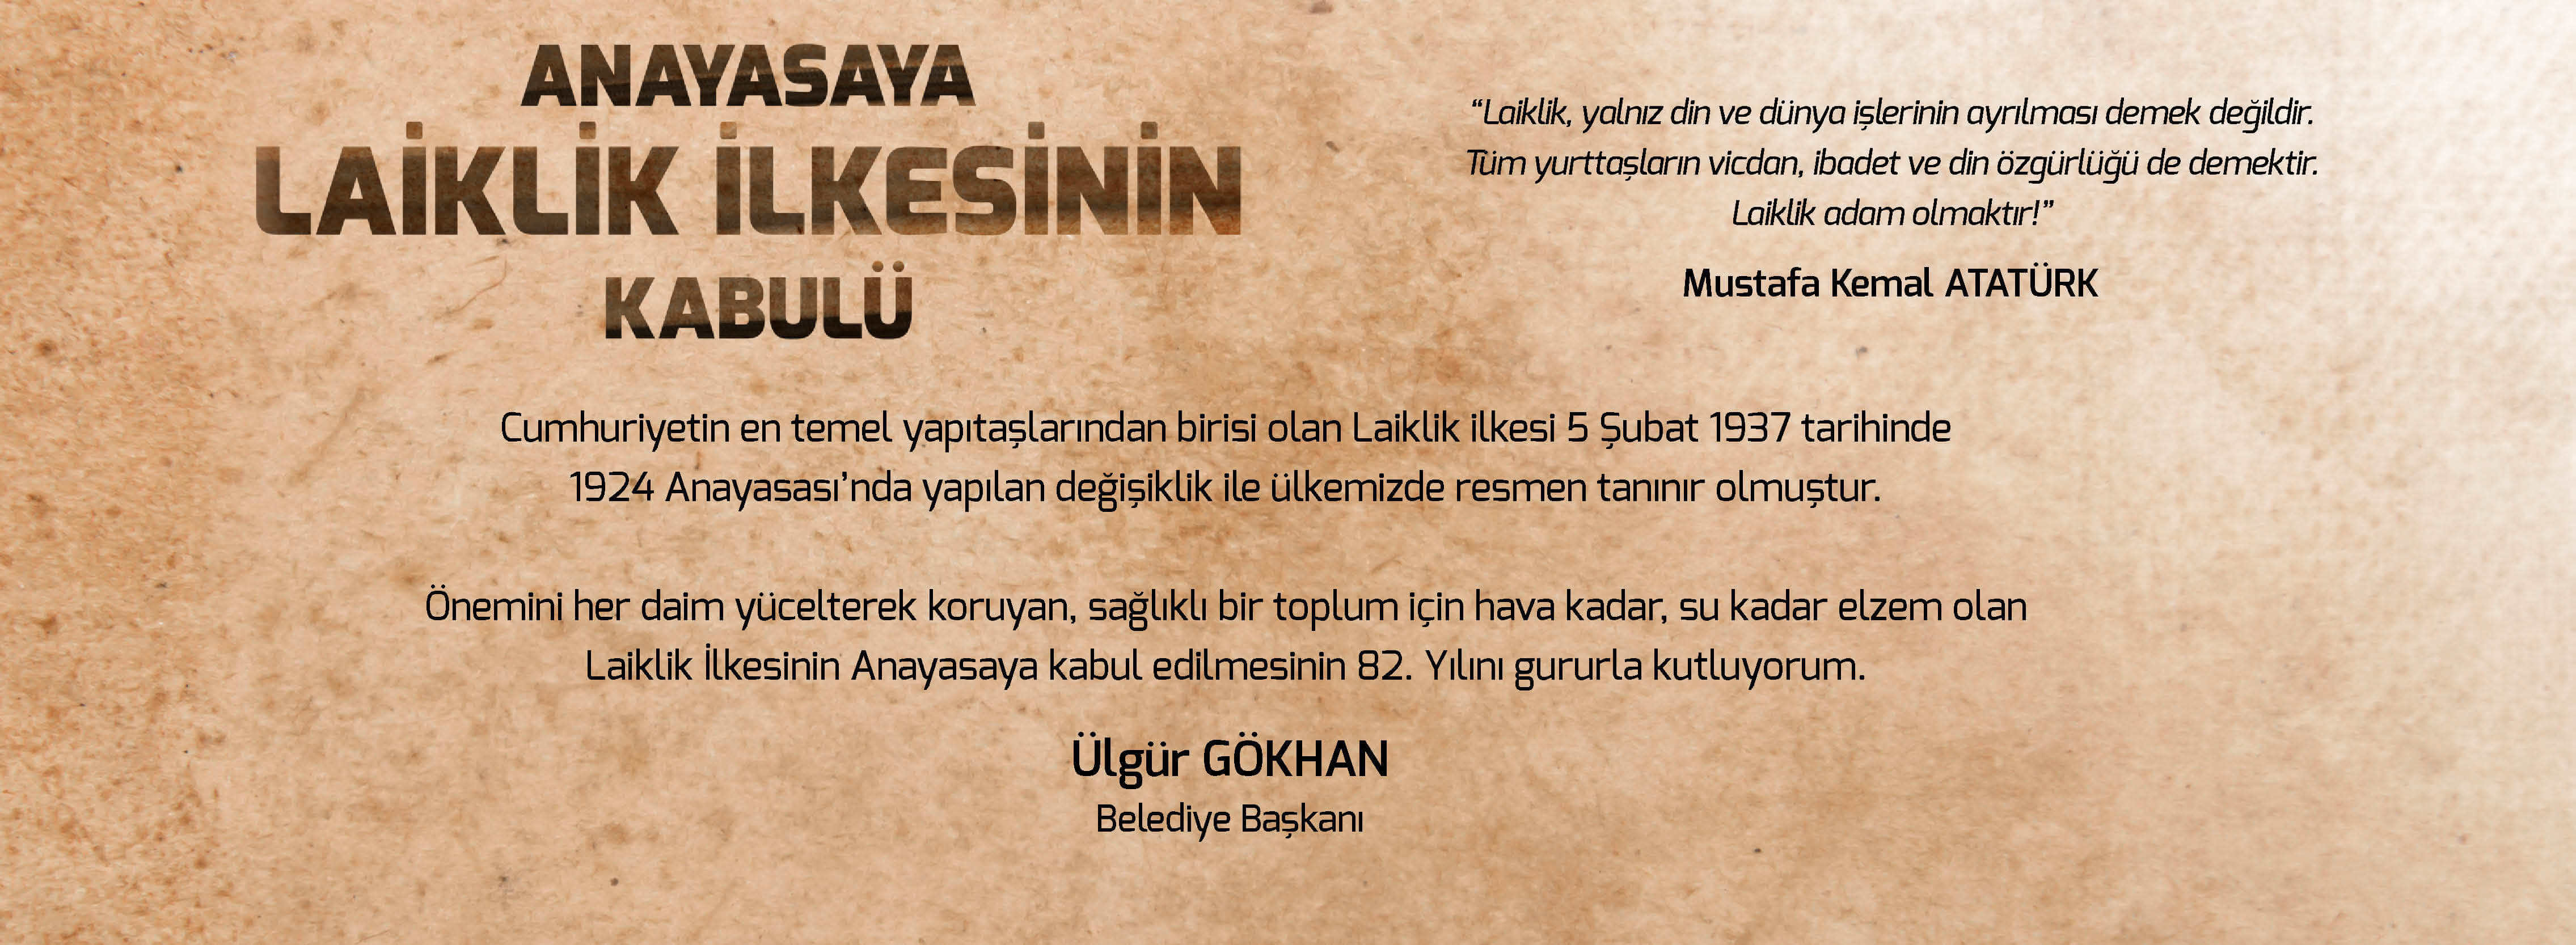 Belediye Başkanı Sayın Ülgür Gökhan'ın, Laiklik İlkesinin Anayasaya Kabulünün 82. Yıldönümü Mesajı...